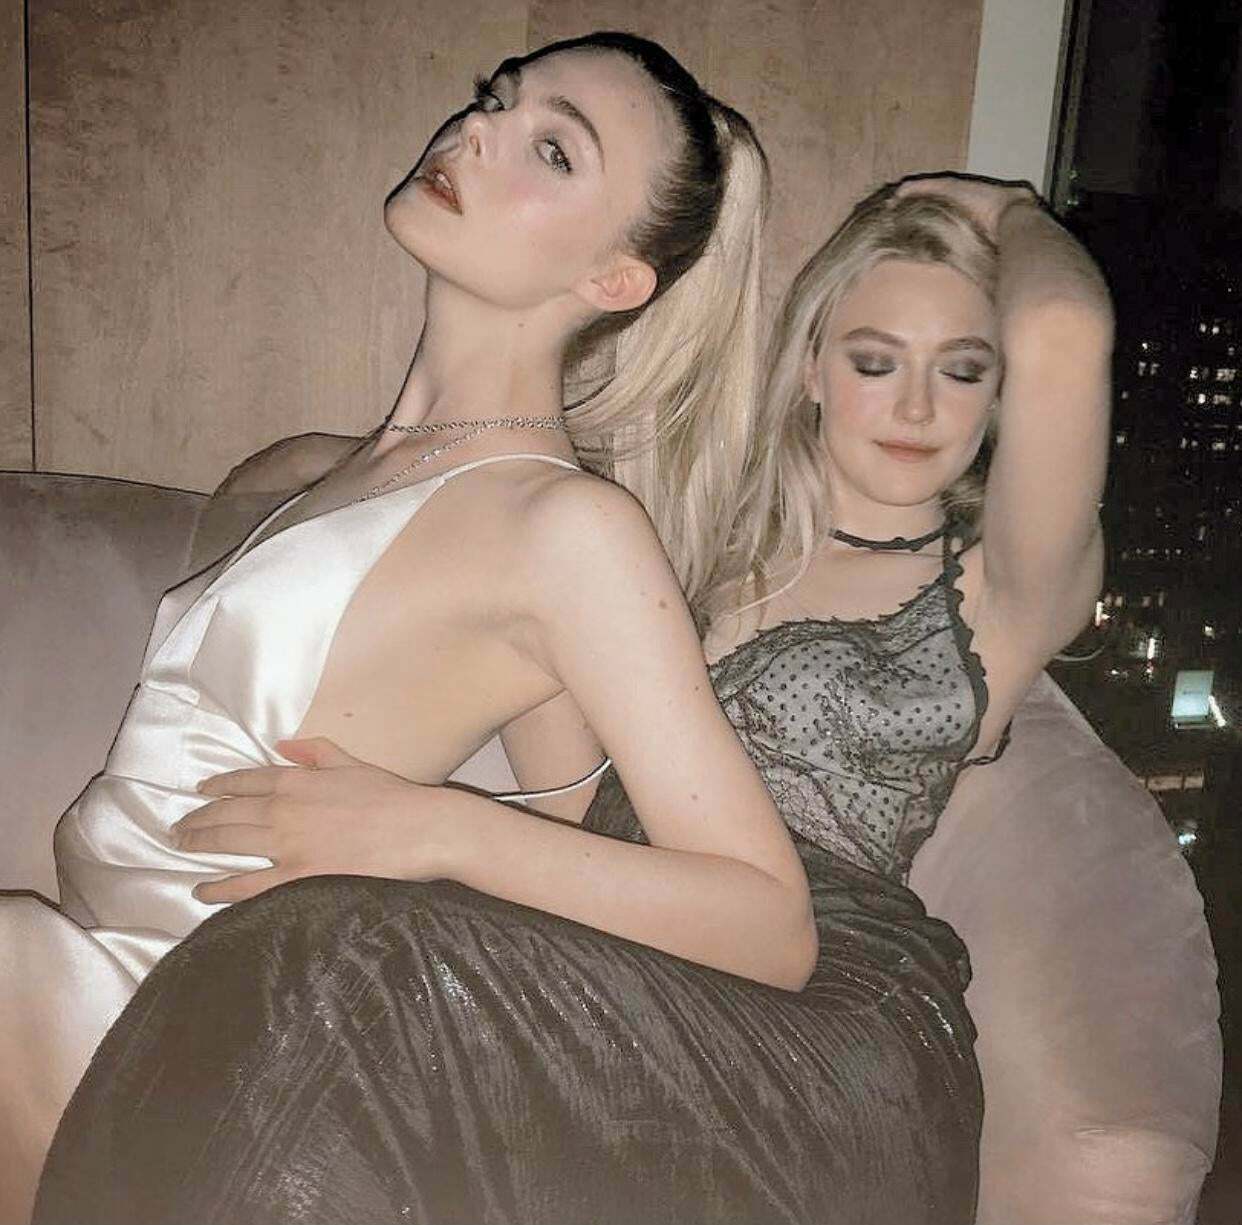 Elle & Dakota Fanning in a sexy mood